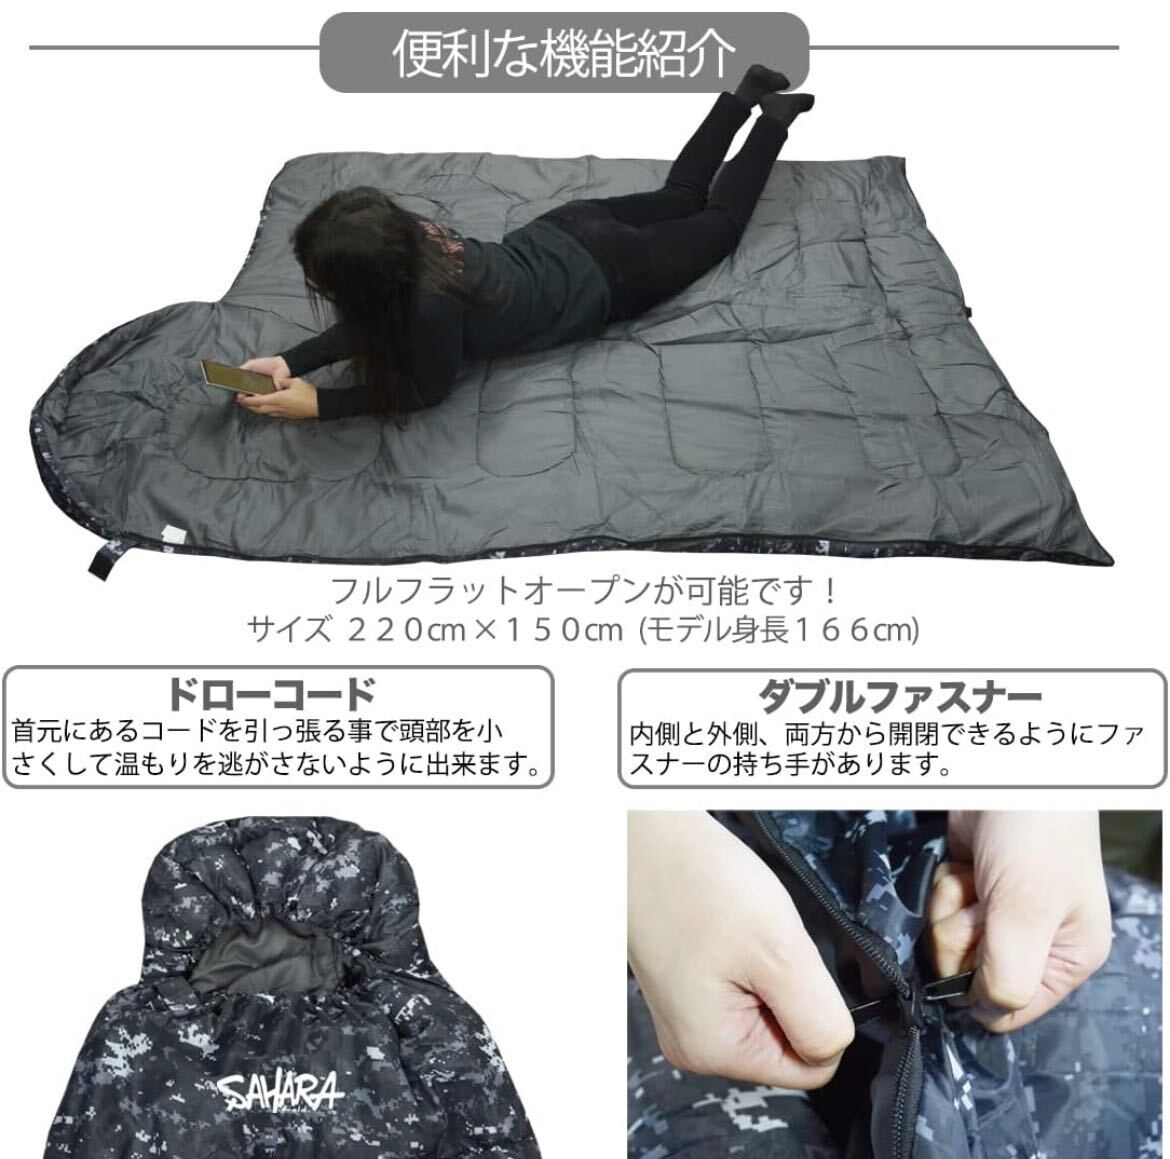 【fieldsahara】 寝袋 シュラフ 封筒型 デジタル迷彩 コンパクト 冬用 夏用 最低使用温度 -15℃デザート 3の画像3